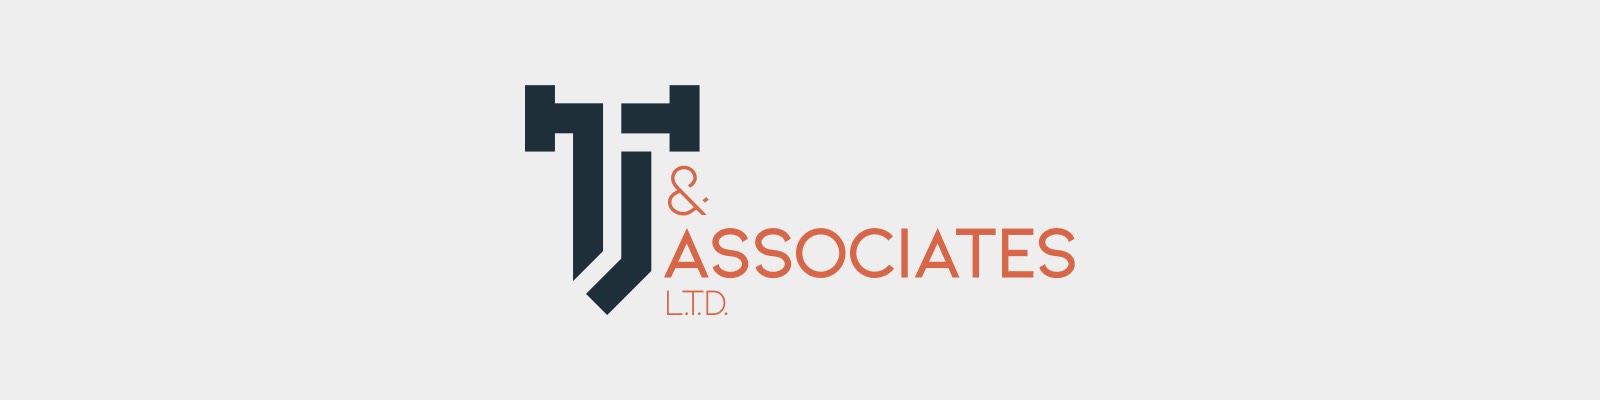 TJ and Associates, L.T.D. Brand Identity